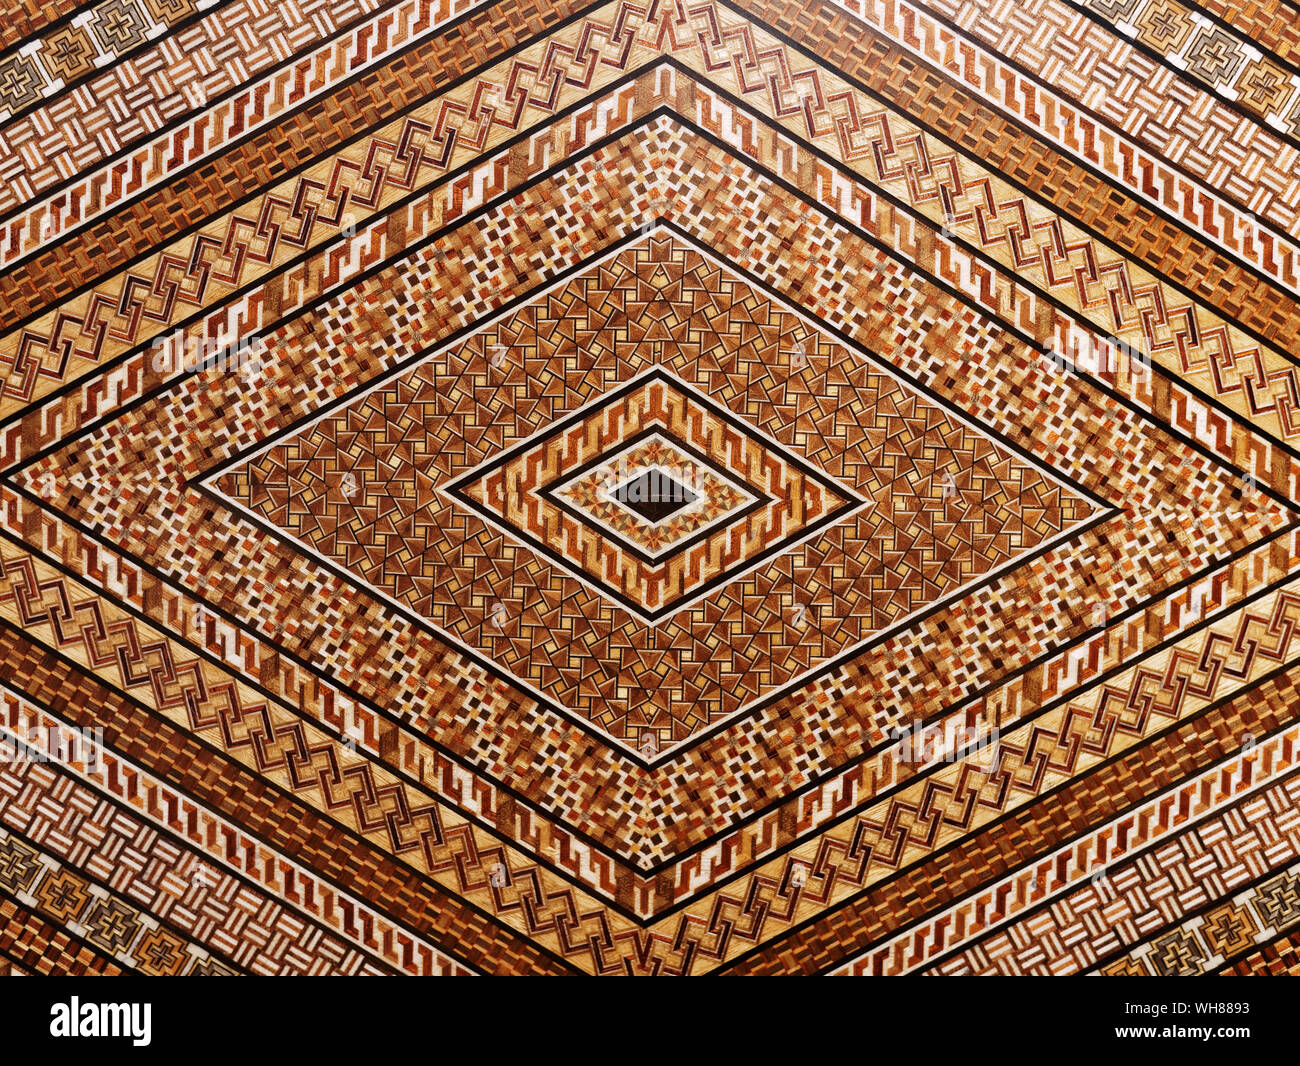 Abstrakte und geometrische Mosaik Intarsien Holz- Oberfläche. Rautenform  Muster Stockfotografie - Alamy